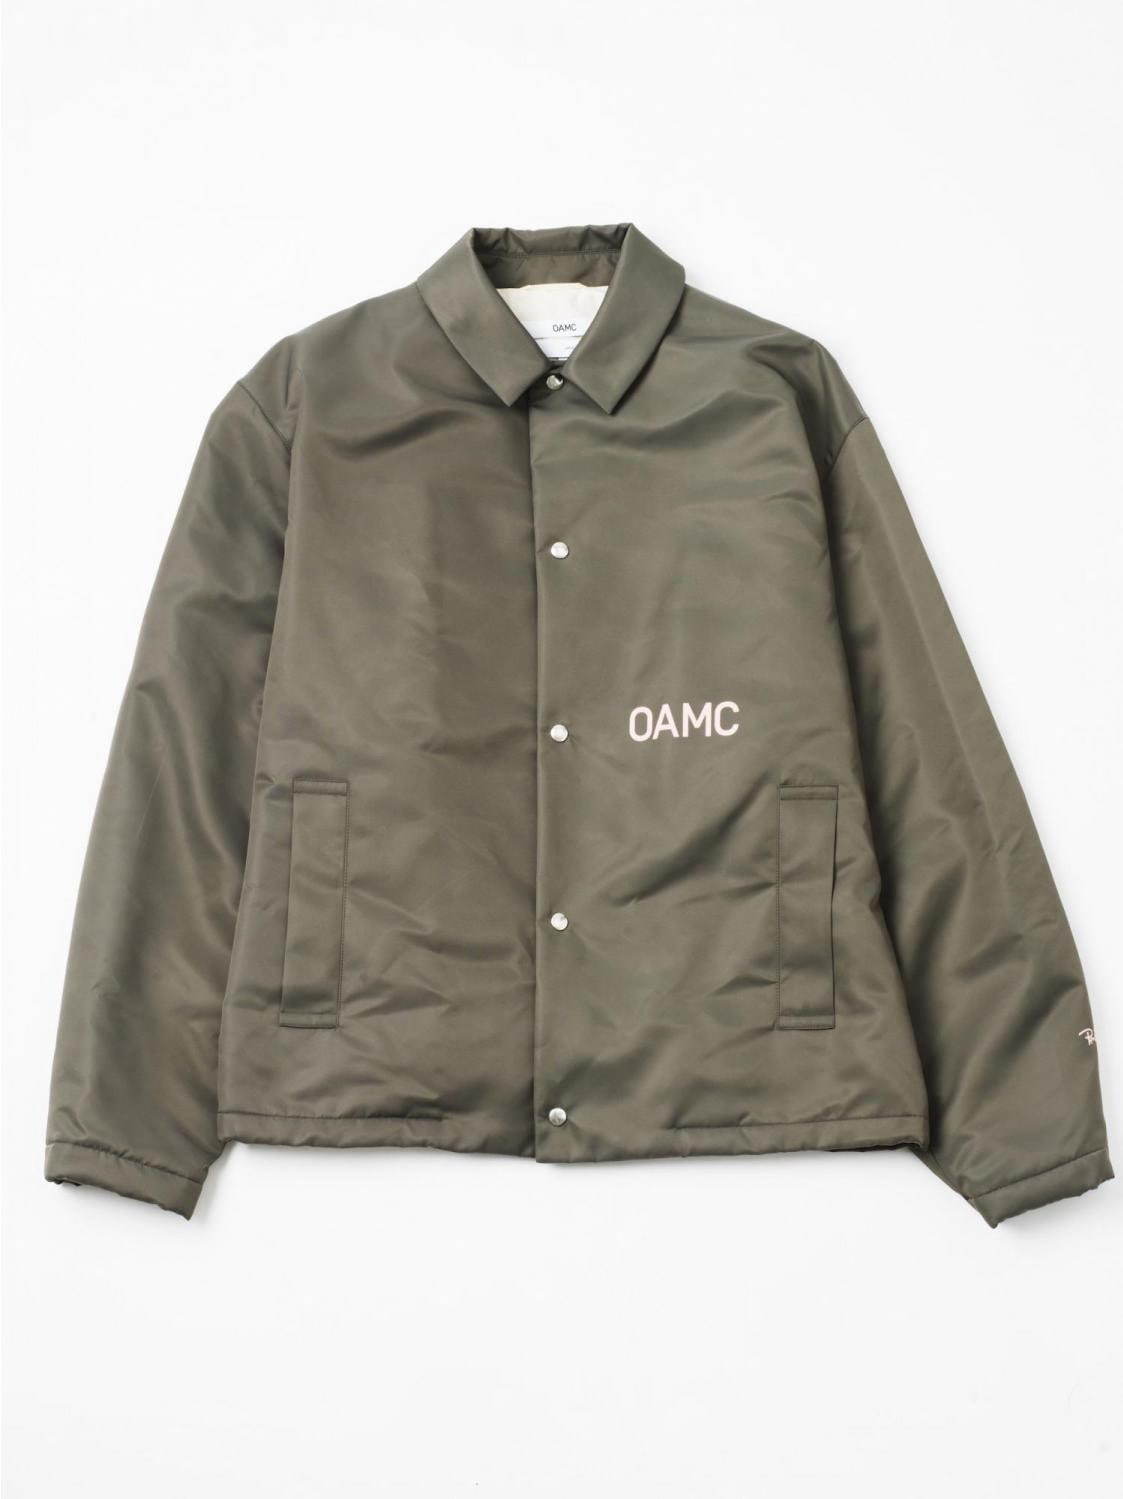 OAMCショースタッフ着用のユニフォーム、ロンハーマン10周年記念デザインで登場 - ファッションプレス